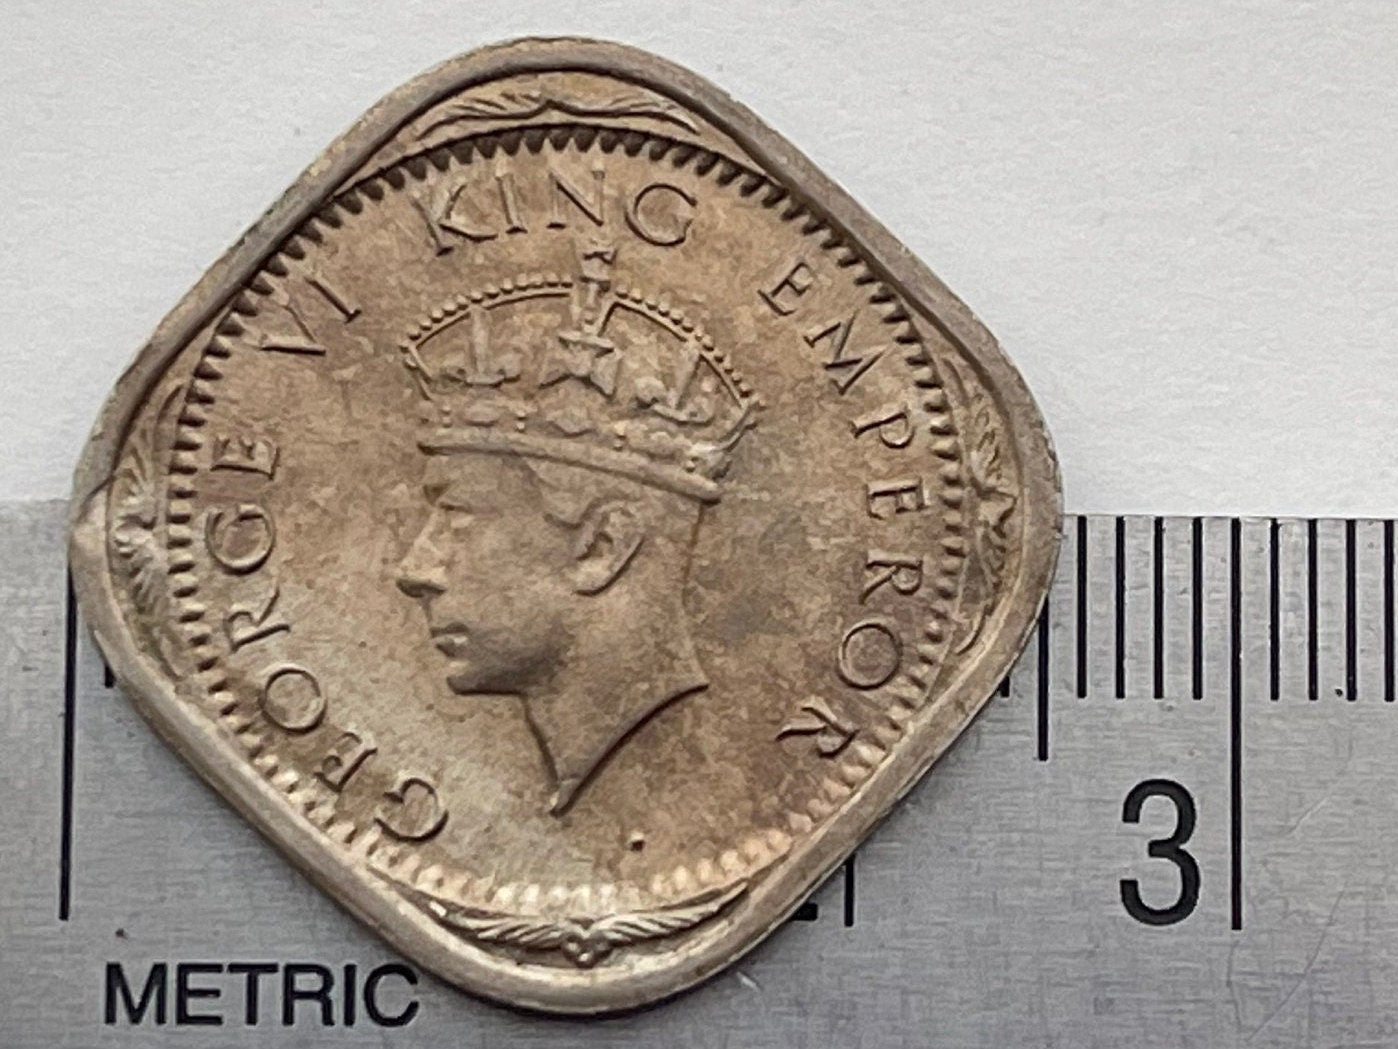 Two Annas & George VI King Emperor British India Authentic Coin Money for Jewelry (British Raj) (Emperor of India) (Quadrilingual) (Square)